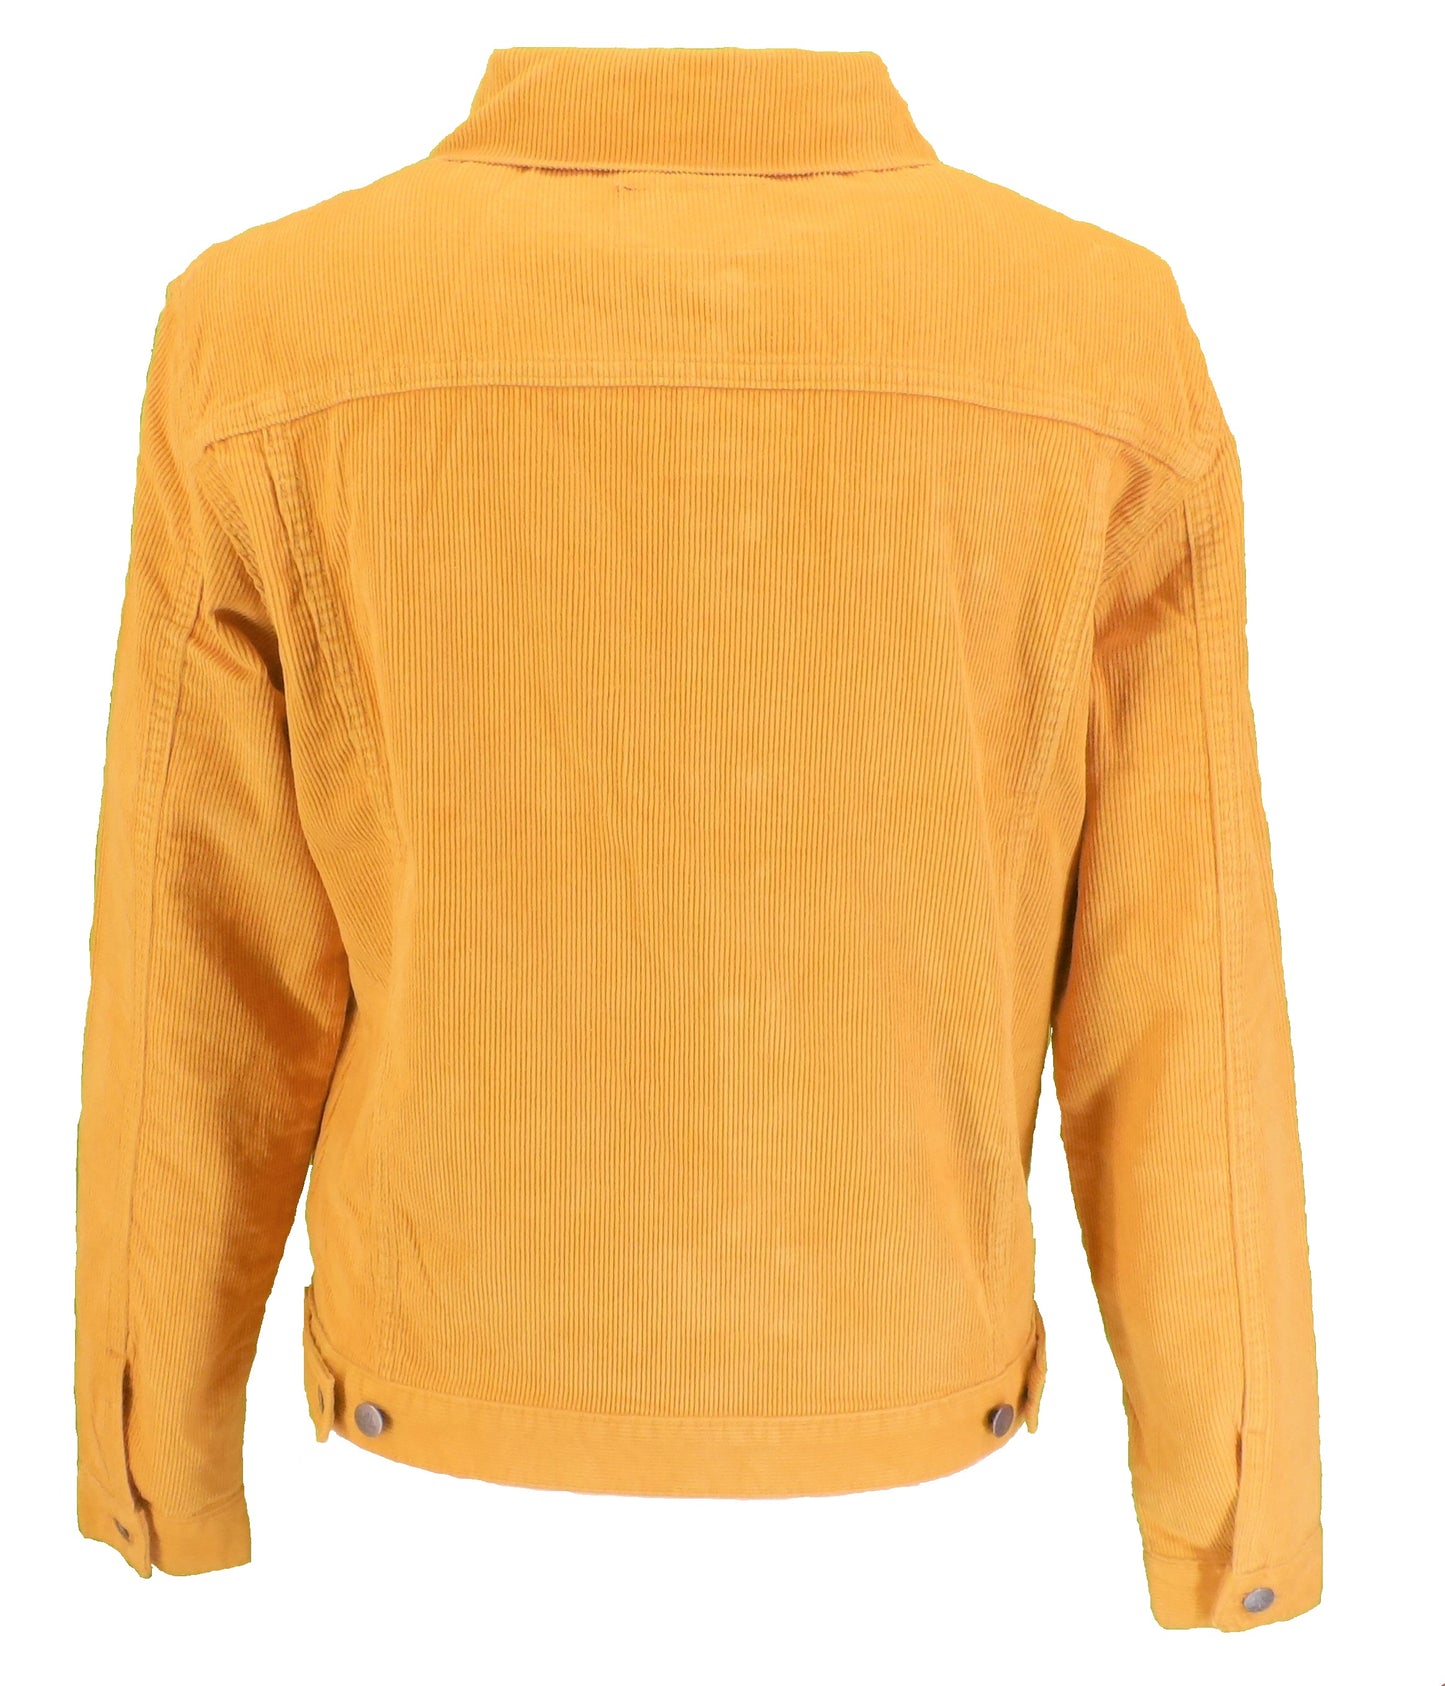 Run & Fly veste de camionneur western rétro vintage avec cordon doré des années 60 pour homme